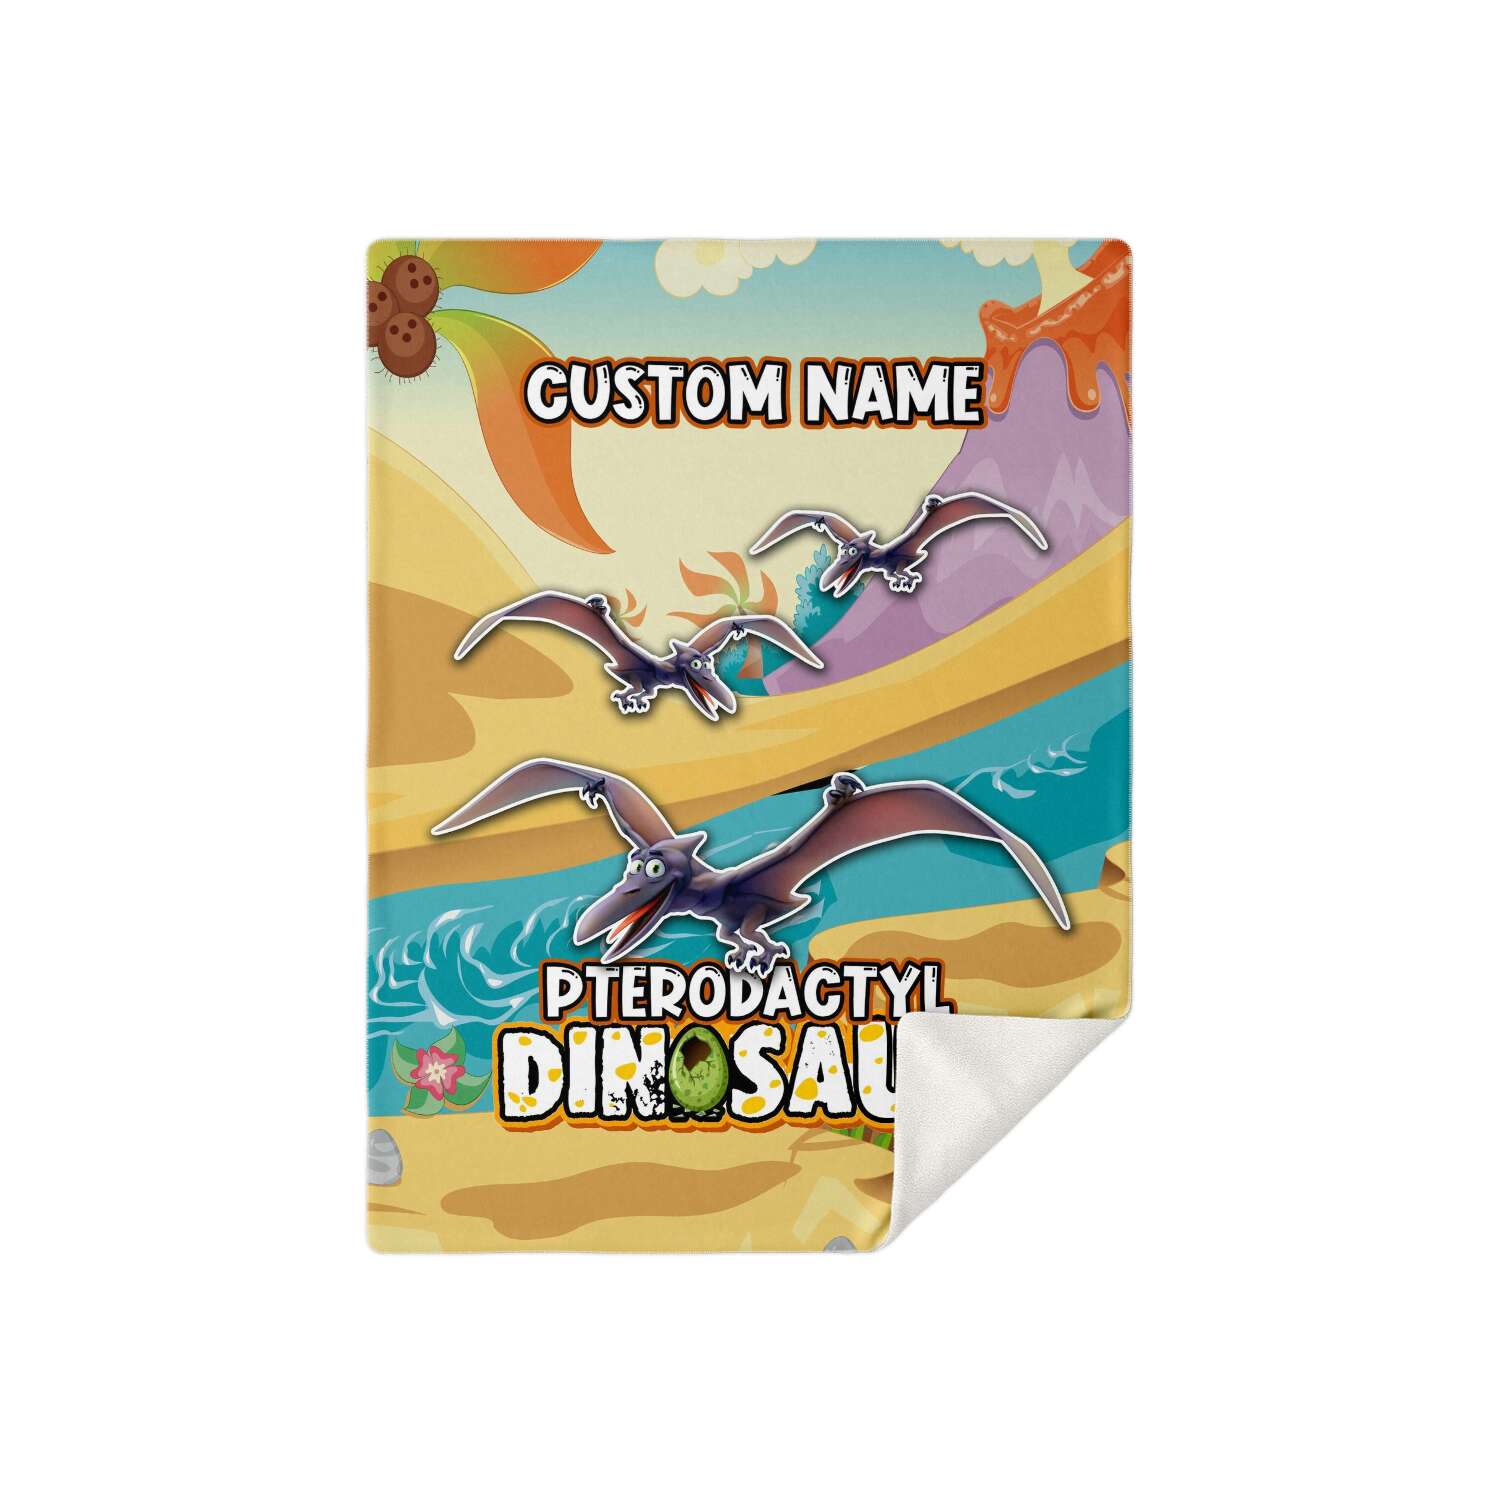 Personalized Name Pterodactyl Dinosaur Blanket for Kids, Custom Name Blanket for Boys & Girls